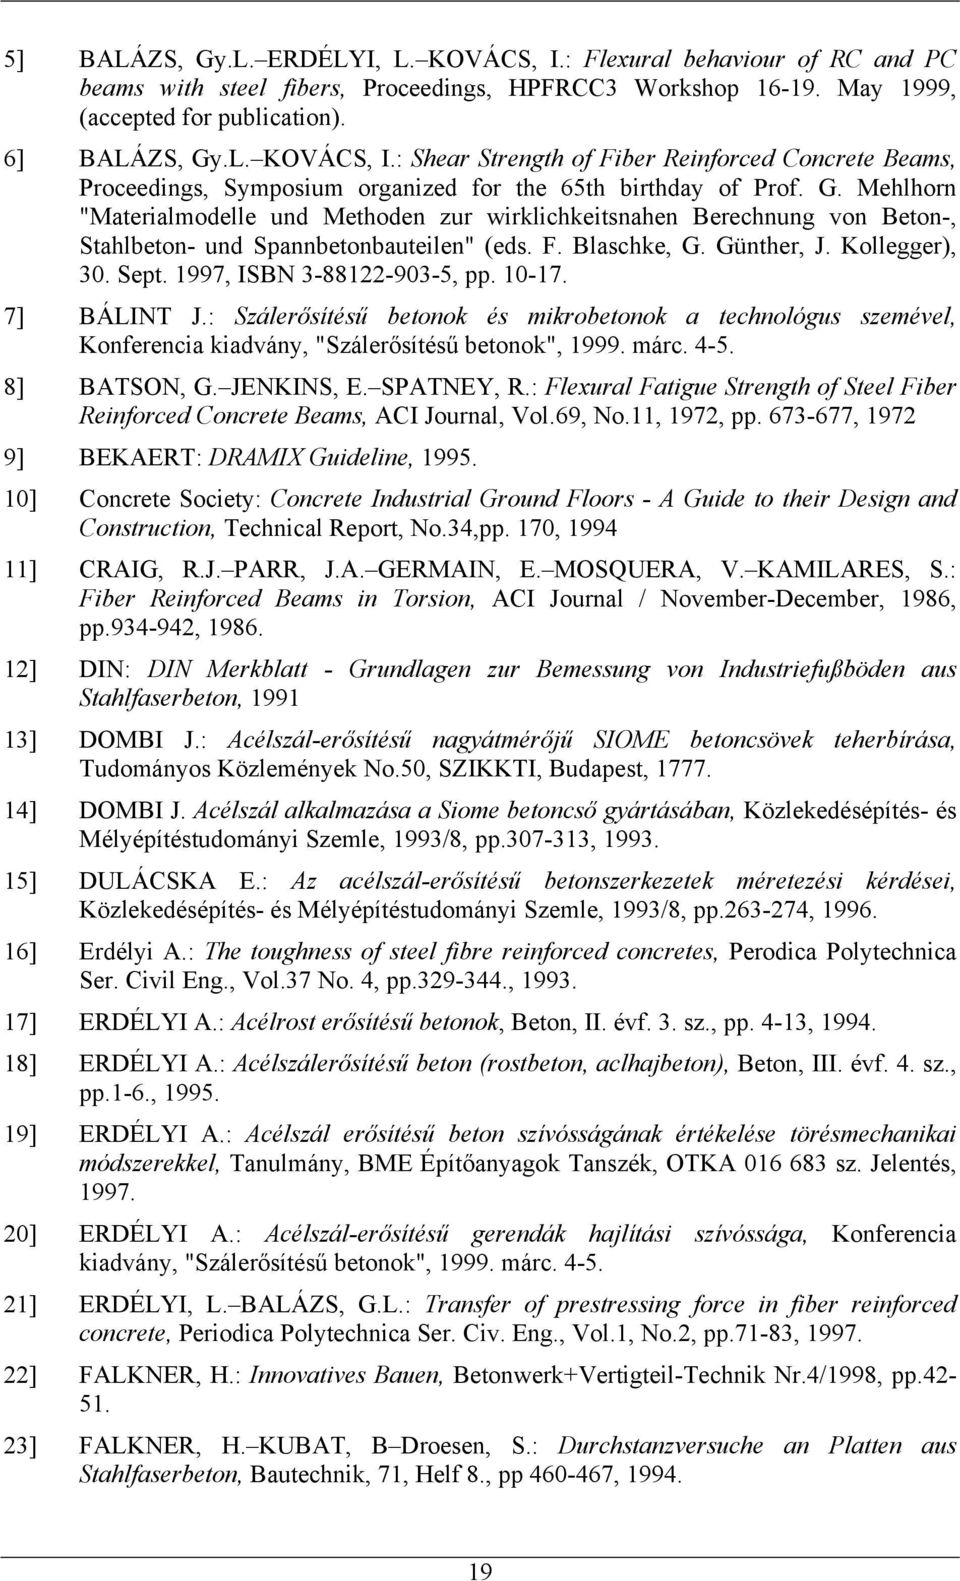 1997, ISBN 3-88122-903-5, pp. 10-17. 7] BÁLINT J.: Szálerősítésű betonok és mikrobetonok a technológus szemével, Konferencia kiadvány, "Szálerősítésű betonok", 1999. márc. 4-5. 8] BATSON, G.